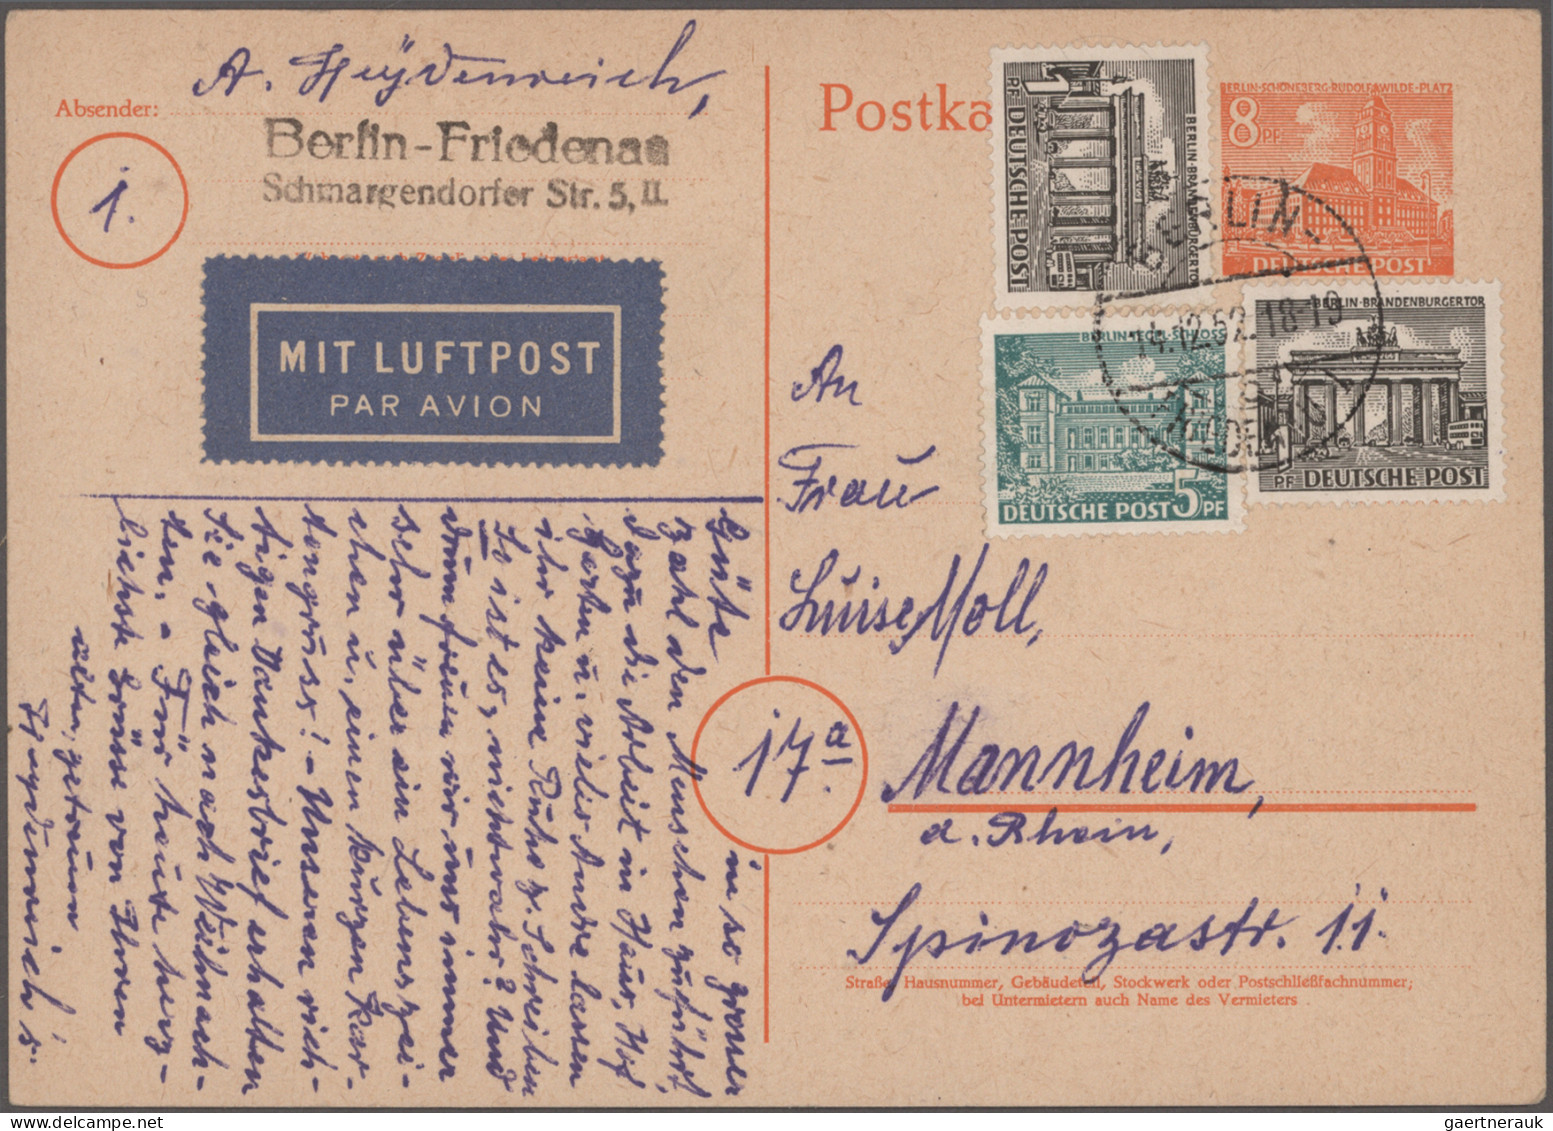 Nachlässe: DEUTSCHLAND-BELEGE - umfangreicher Bestand Briefe und Karten mit insg